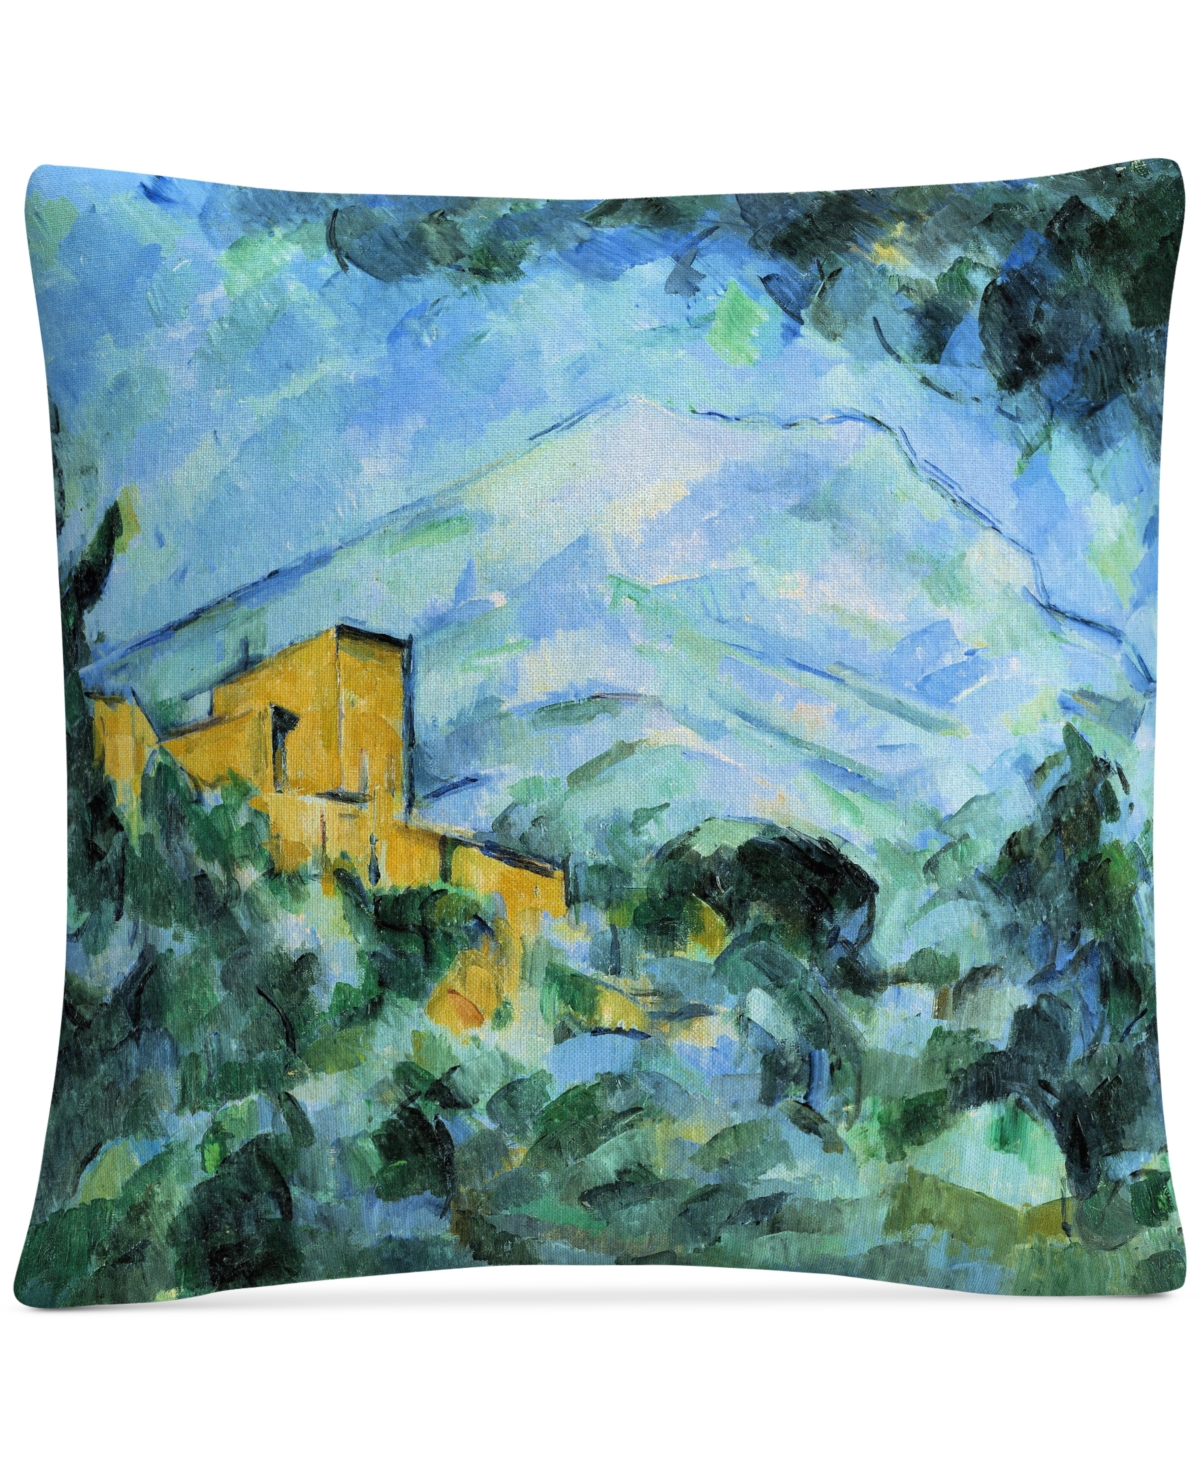 Cezanne Mont Saintevictoire And Chateau Noir Decorative Pillow, 16 x 16